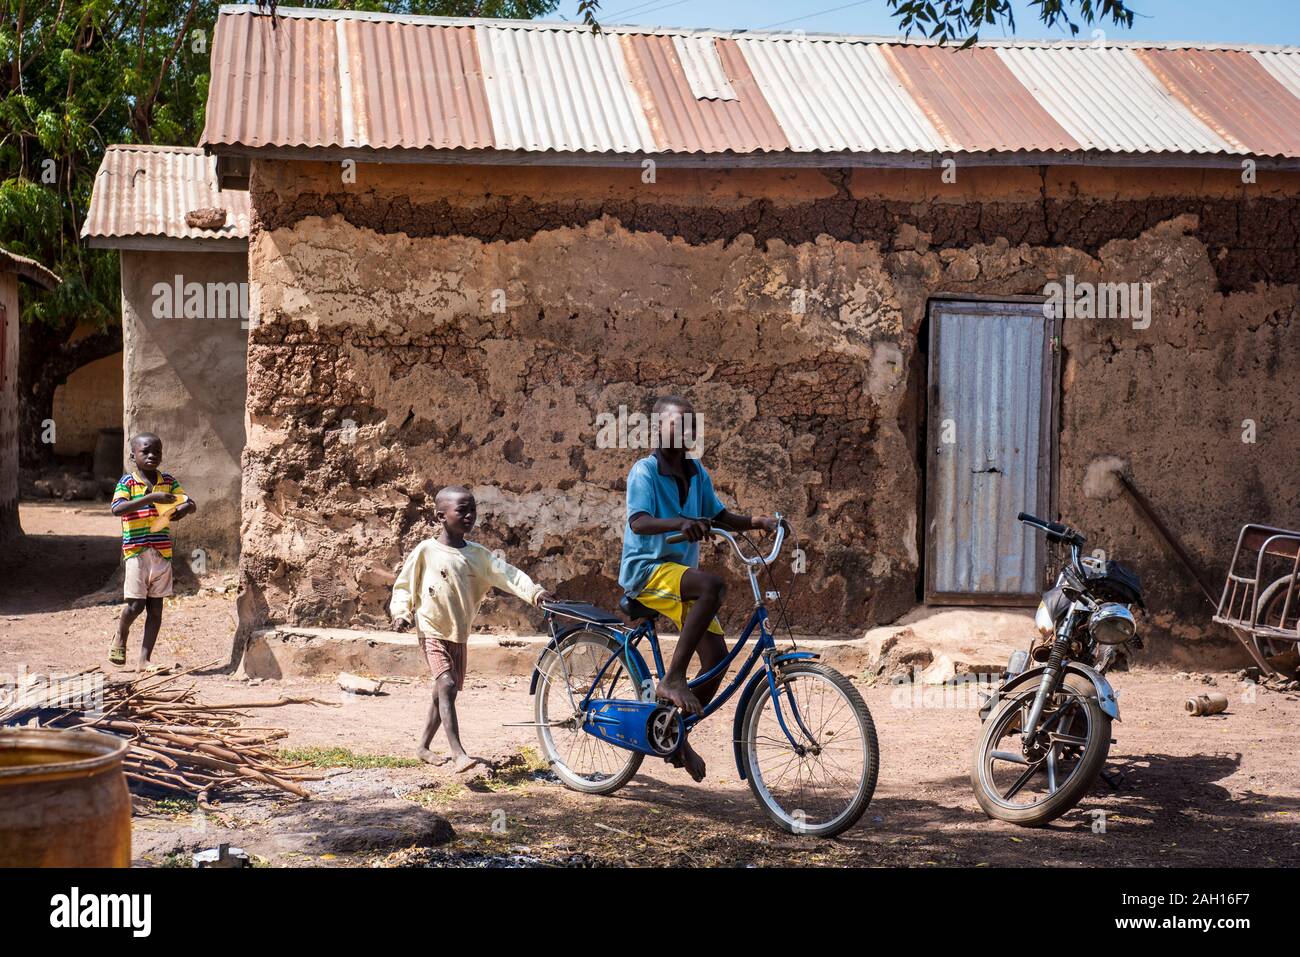 Le Bénin, Kandi, african boy, équitation, location de vélos, maison de terre, cour, village africain Banque D'Images